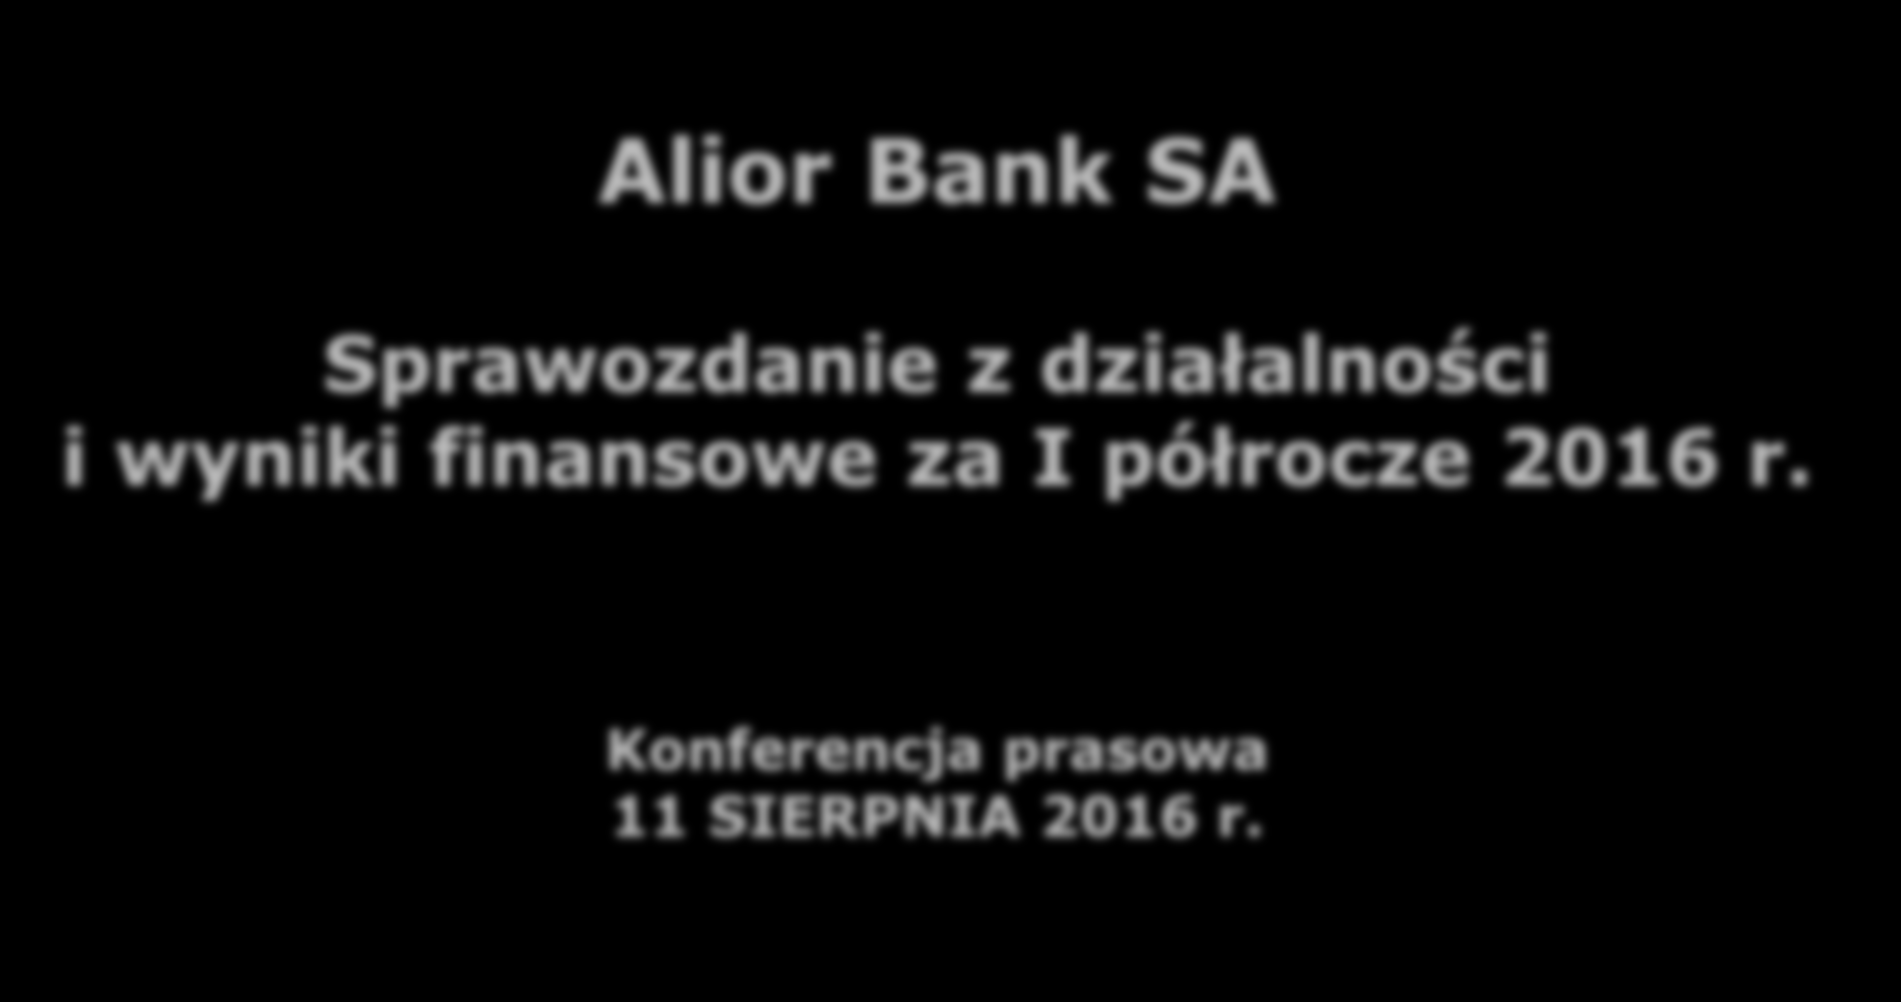 Alior Bank SA Sprawozdanie z działalności i wyniki finansowe